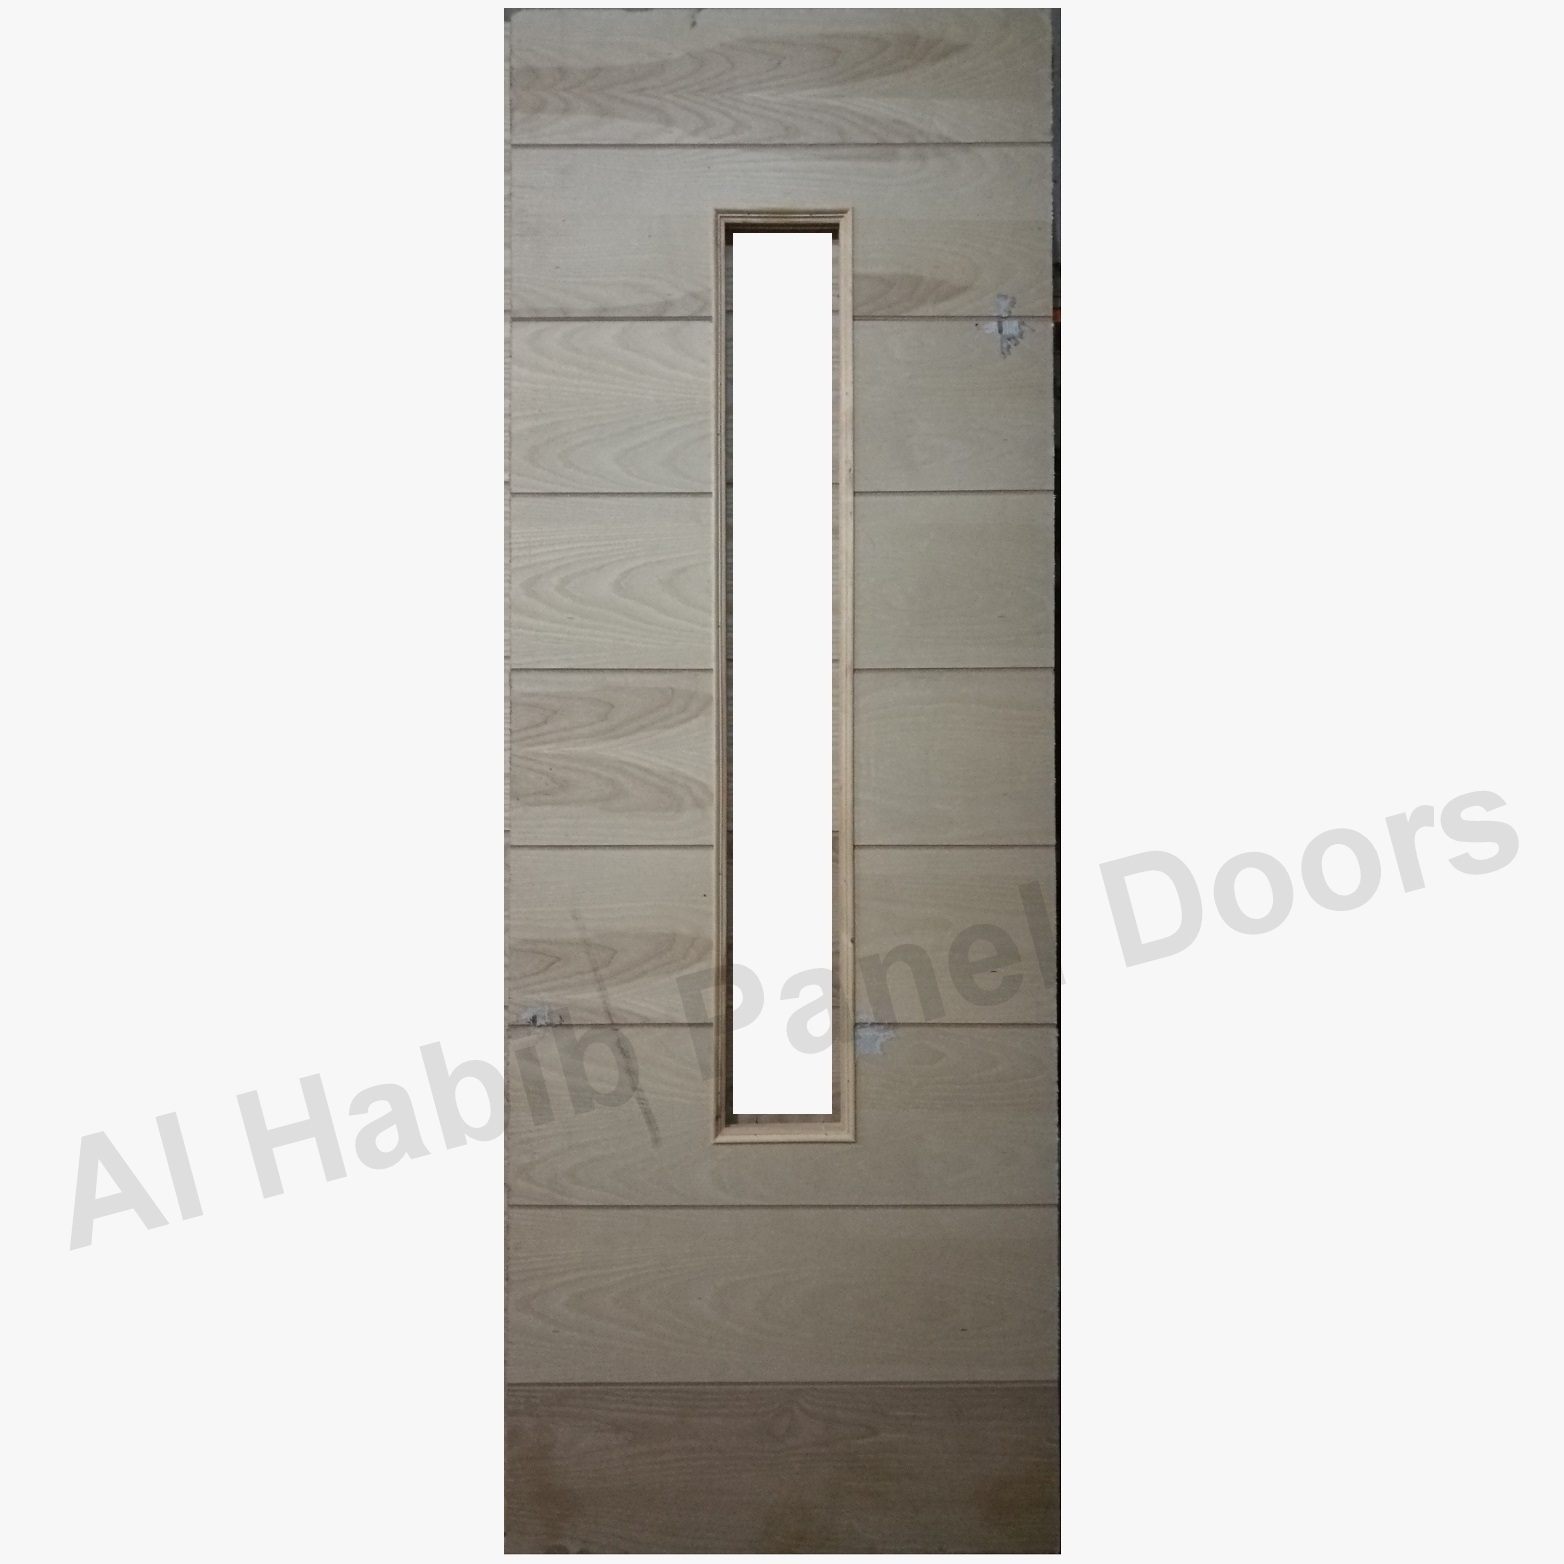 Ash Strips Door With Glass Design